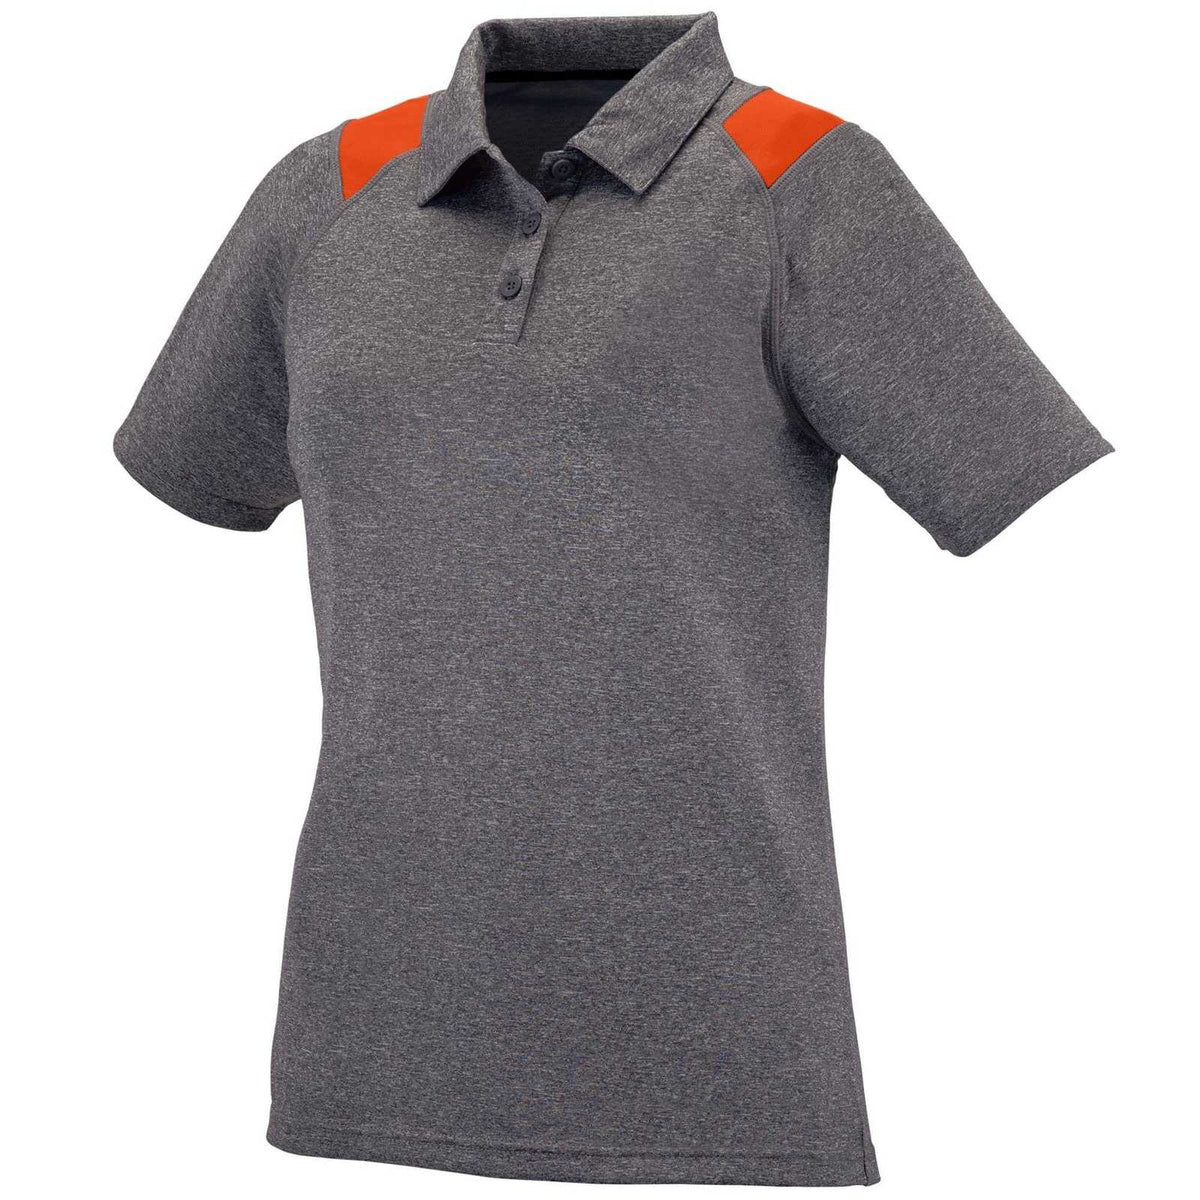 Augusta 5403 Ladies Torce Sport Shirt - Dark Gray Orange - HIT a Double